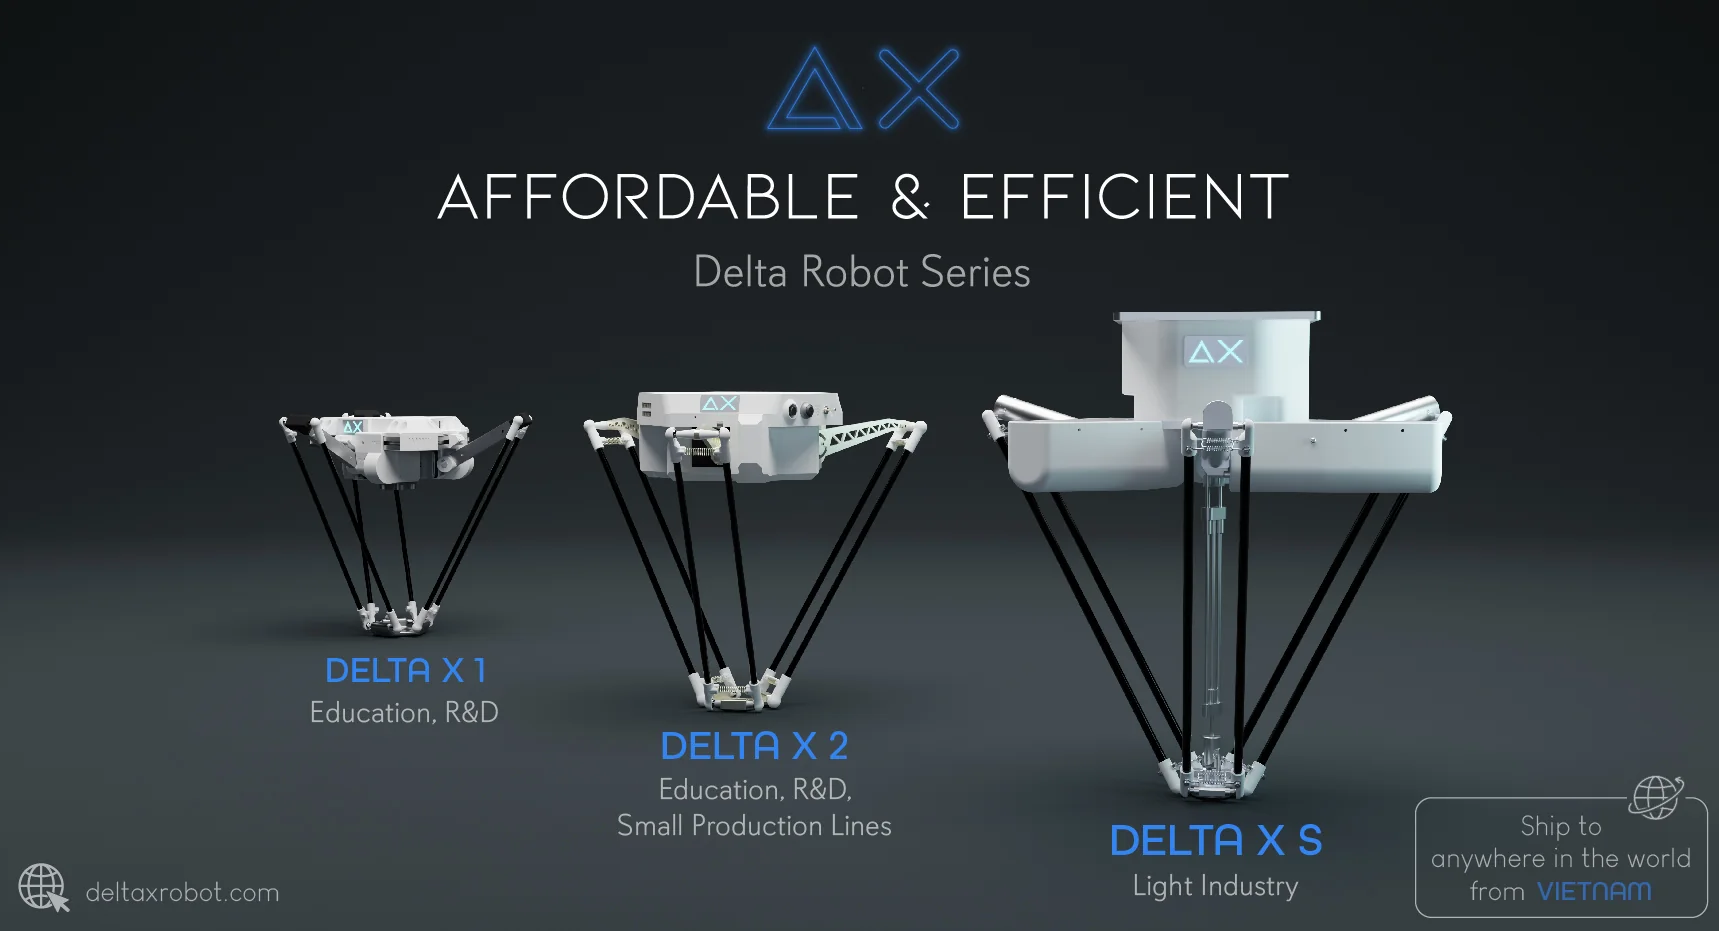 delta_x_models